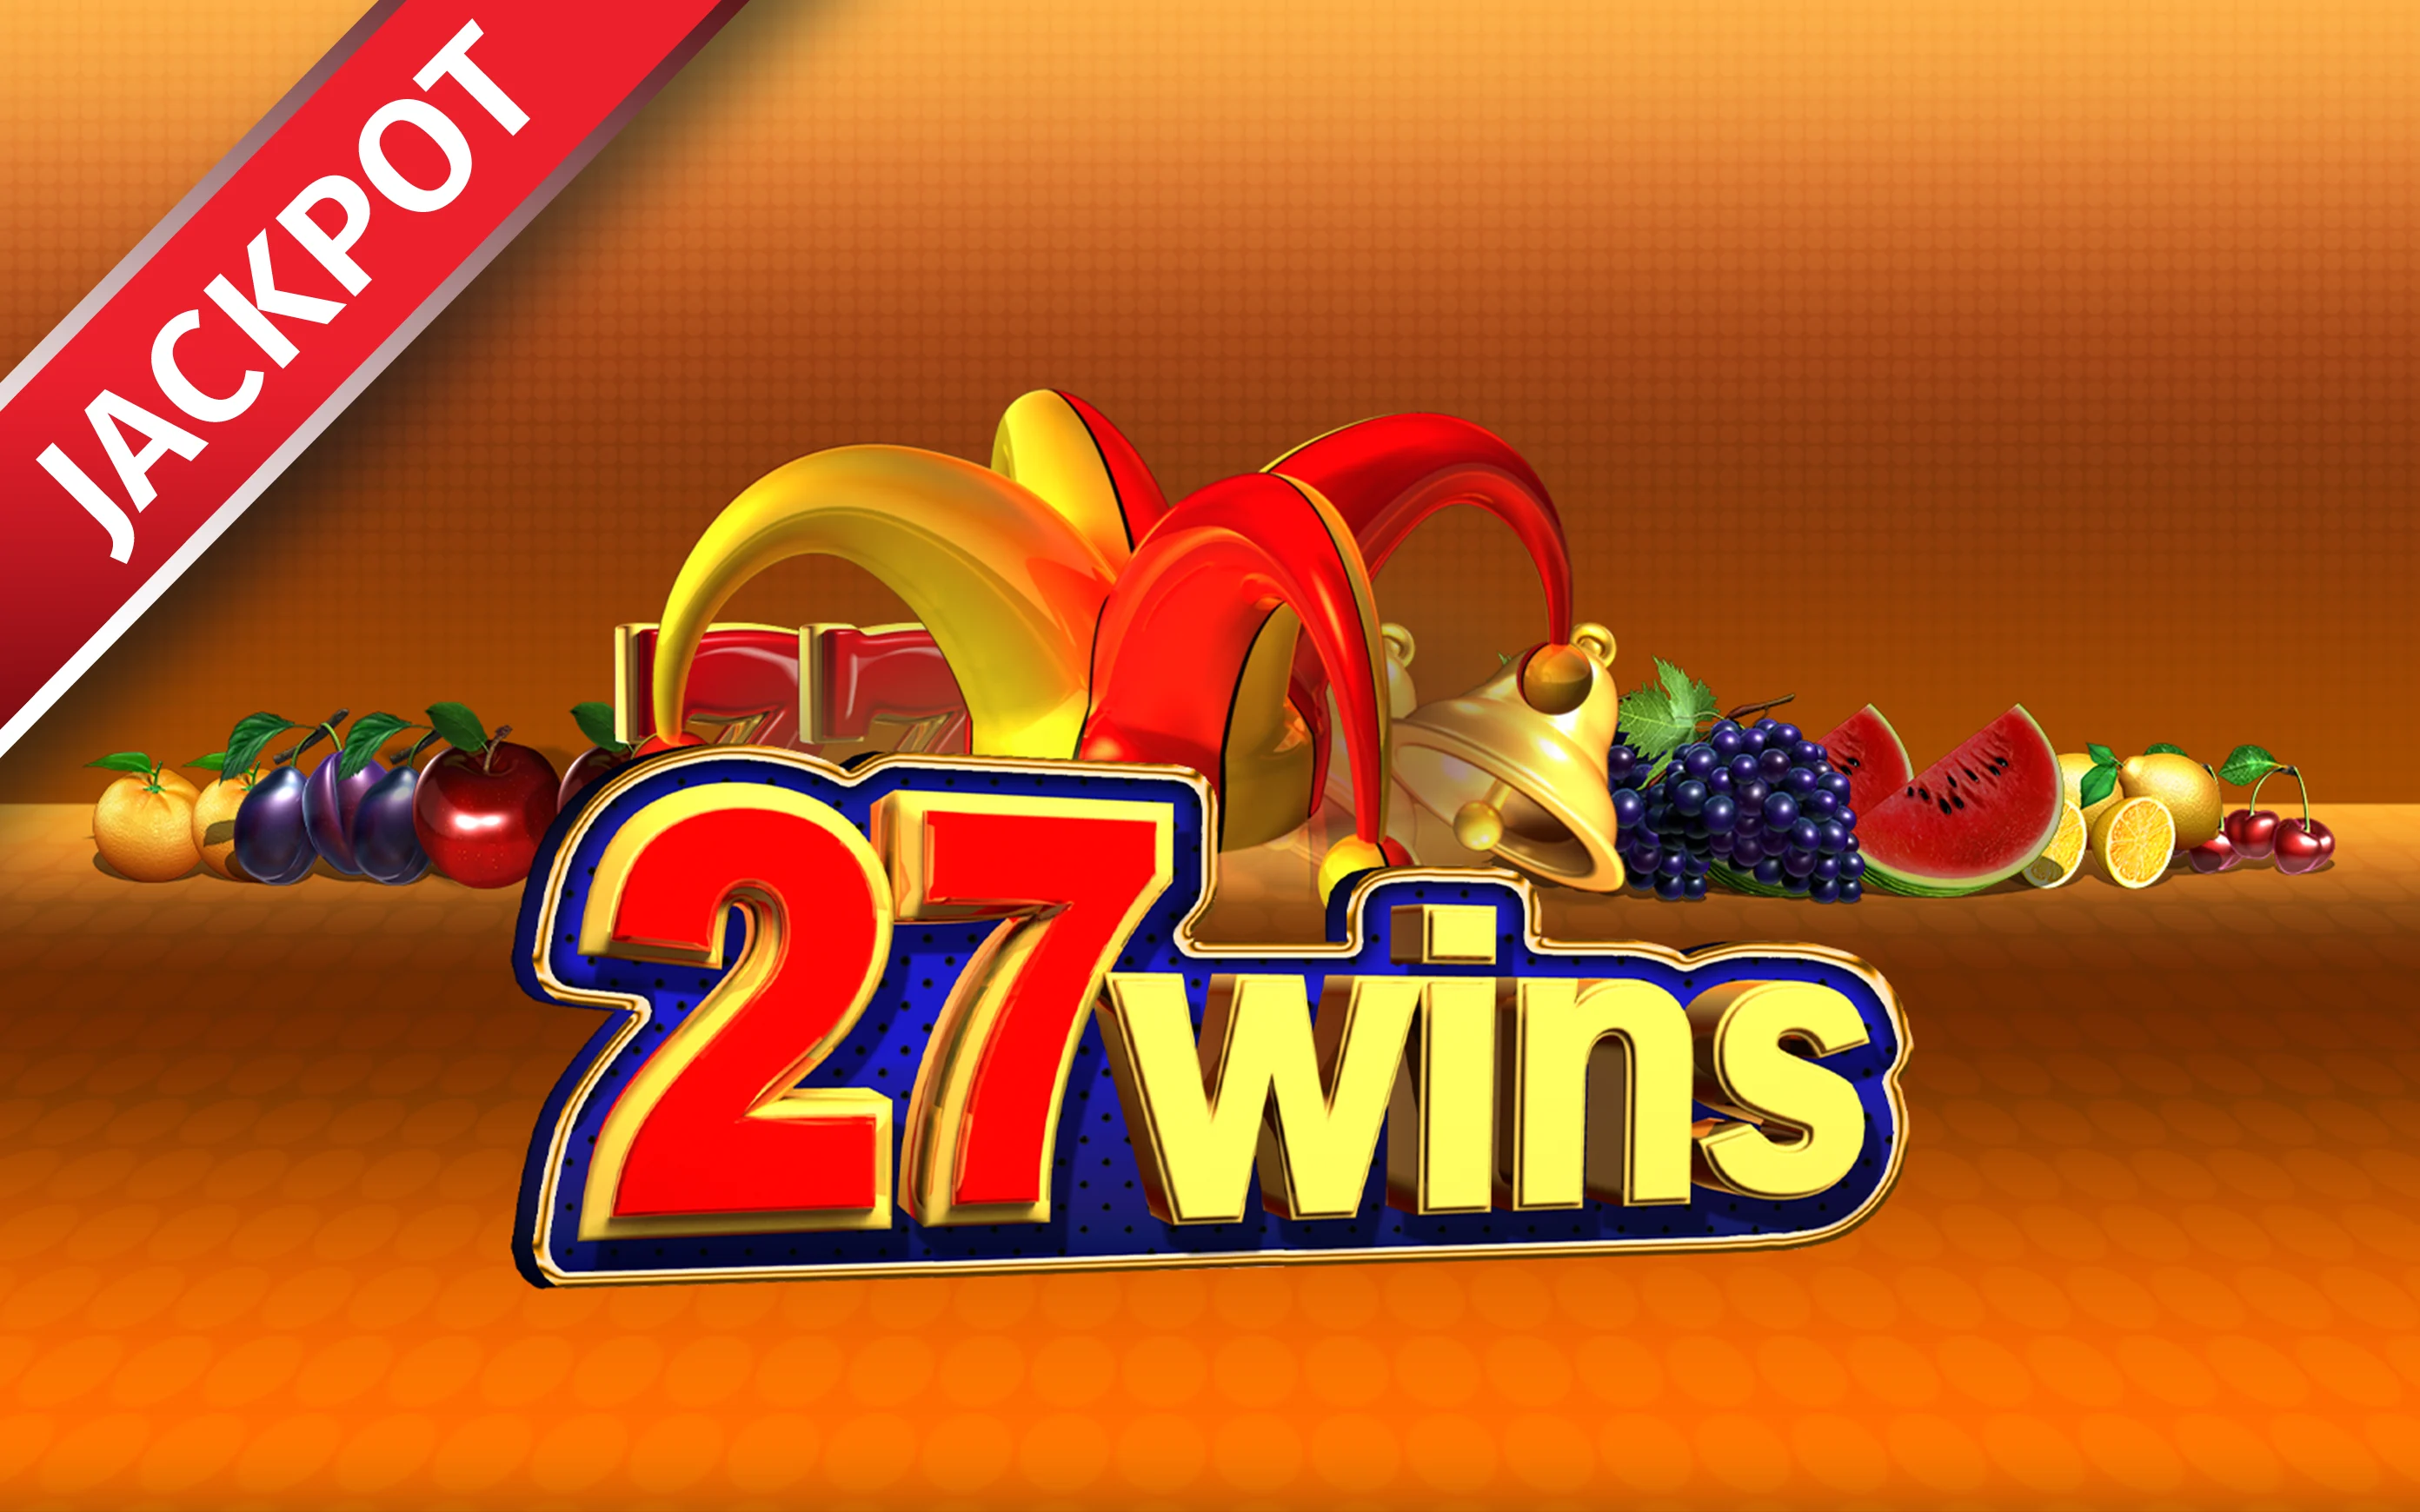 Chơi 27 Wins trên sòng bạc trực tuyến Starcasino.be